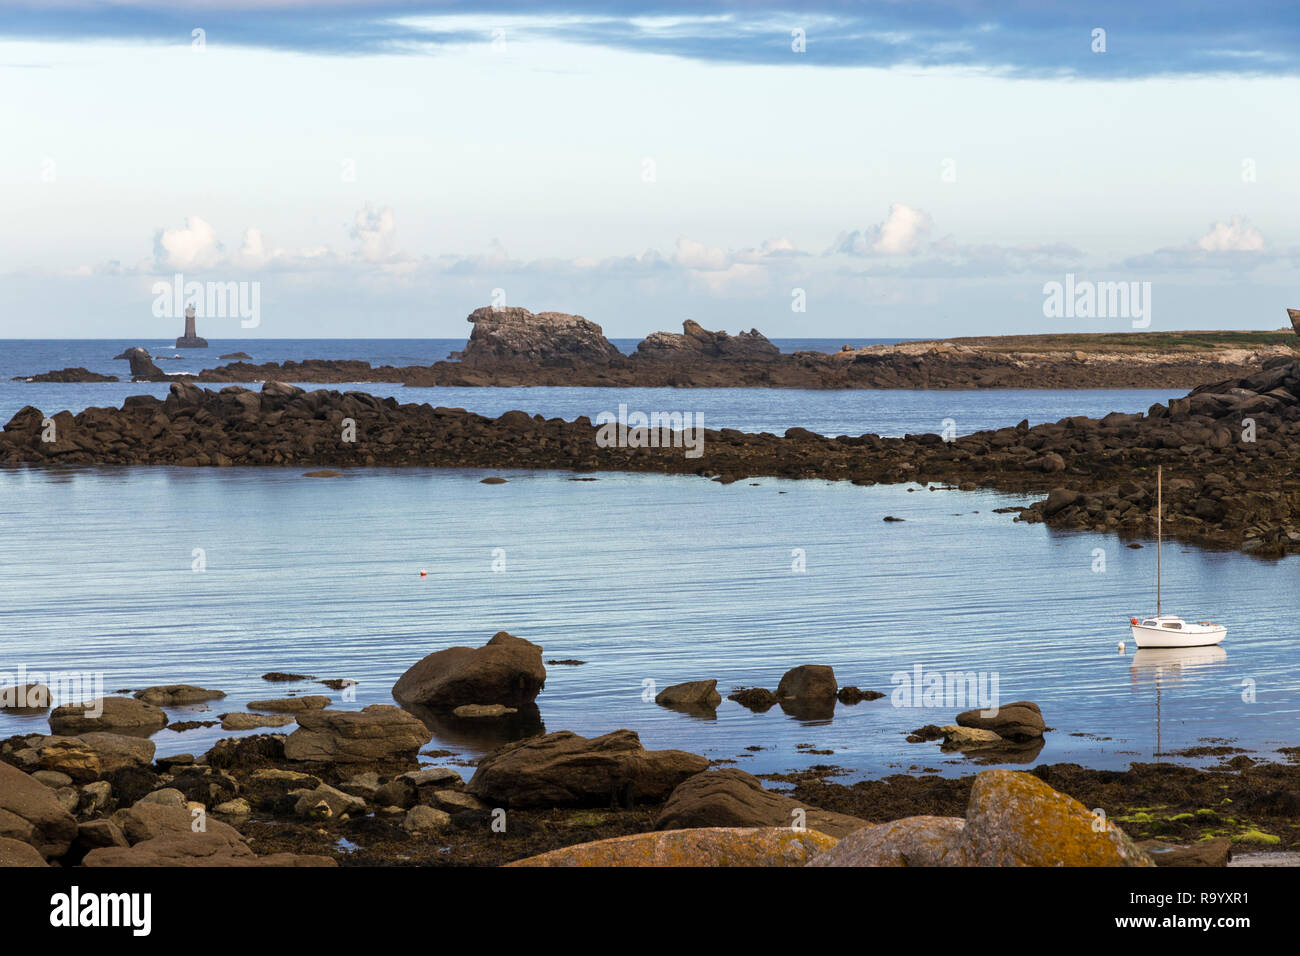 Porspoder, France. Paysage rocheux dans la côte de Bretagne (Bretagne) à l'aube d'une belle journée d'été, avec un bateau et un phare Banque D'Images